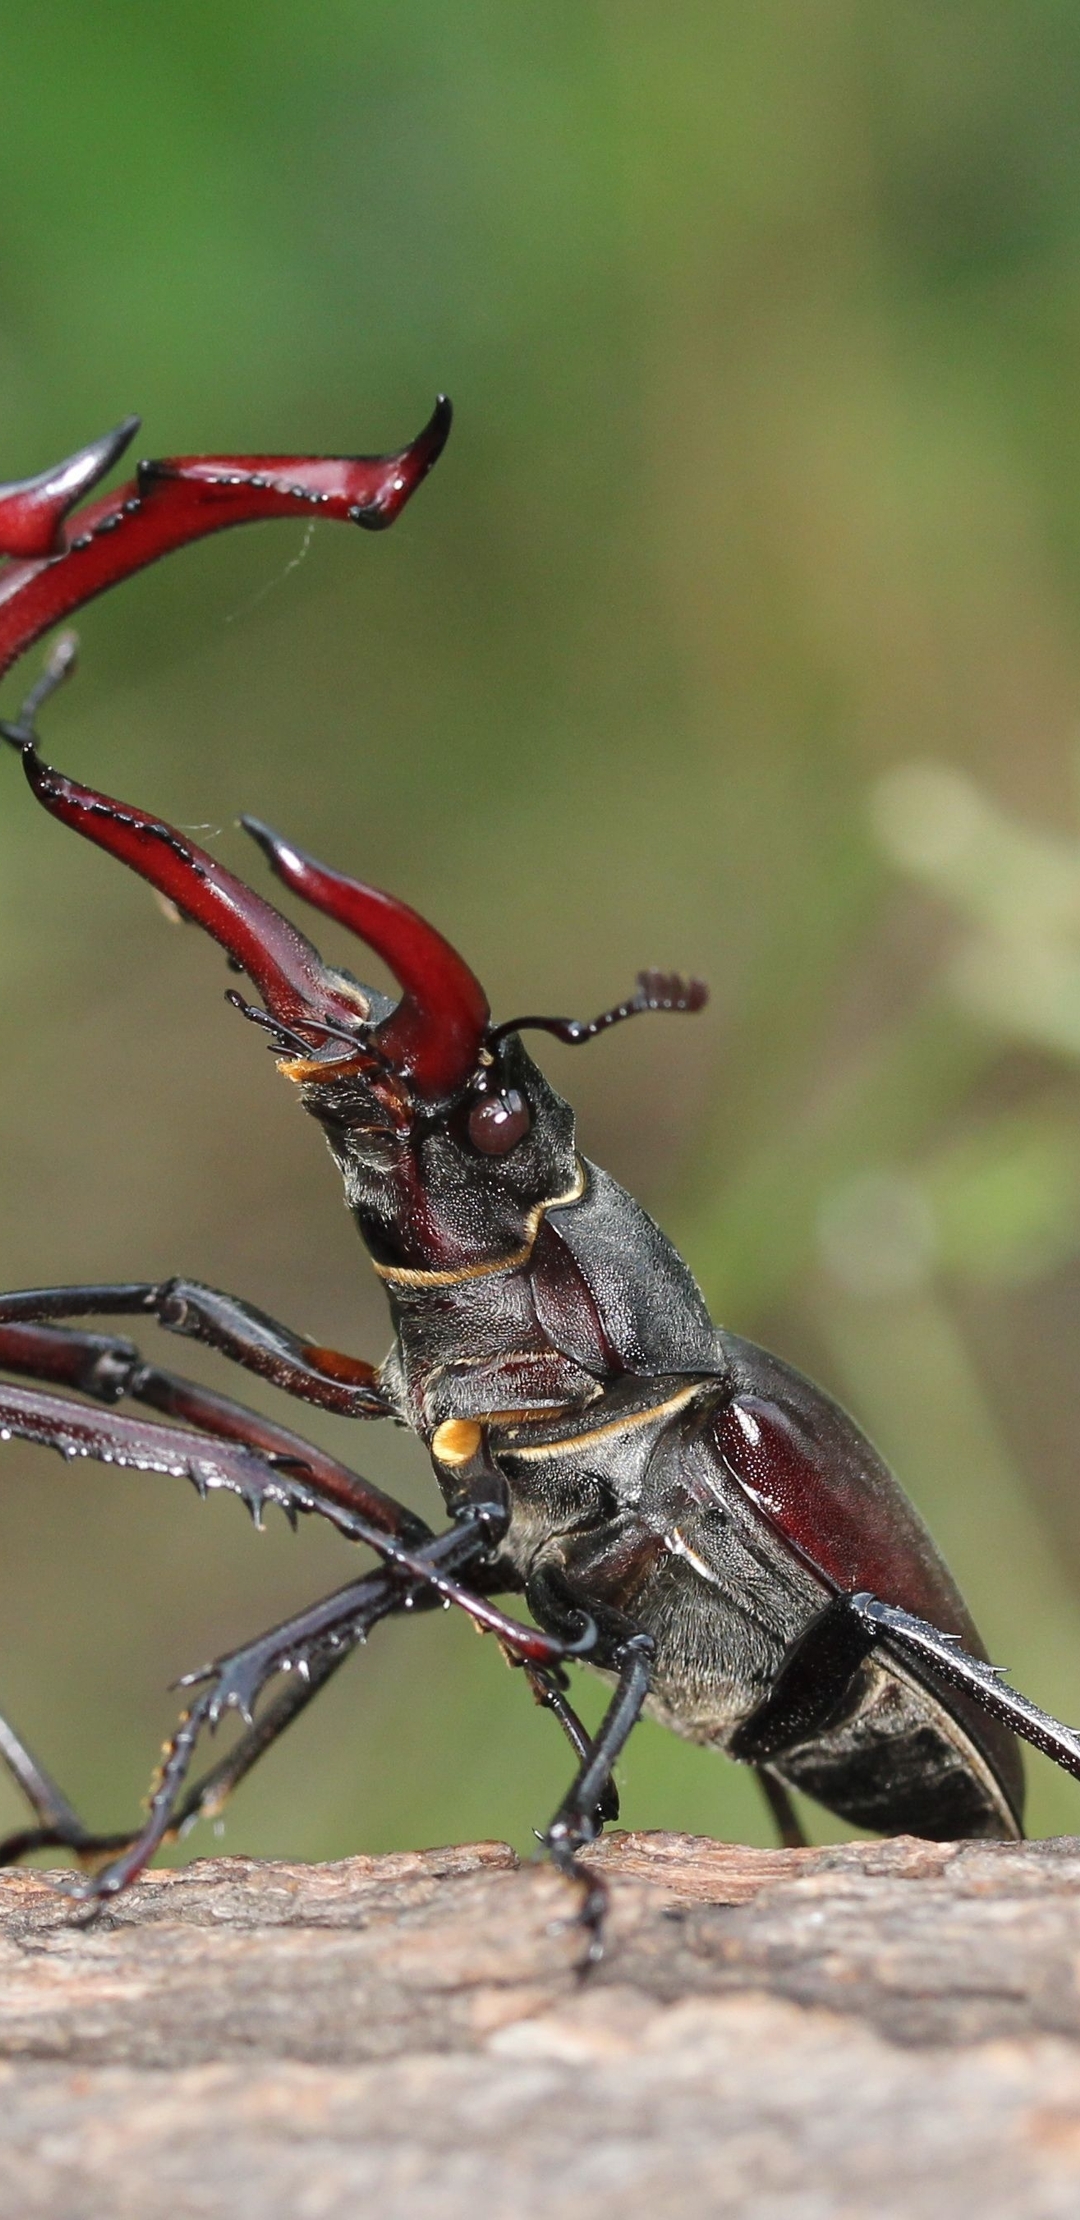 Картинка: Жук-олень, насекомые, борьба, схватка